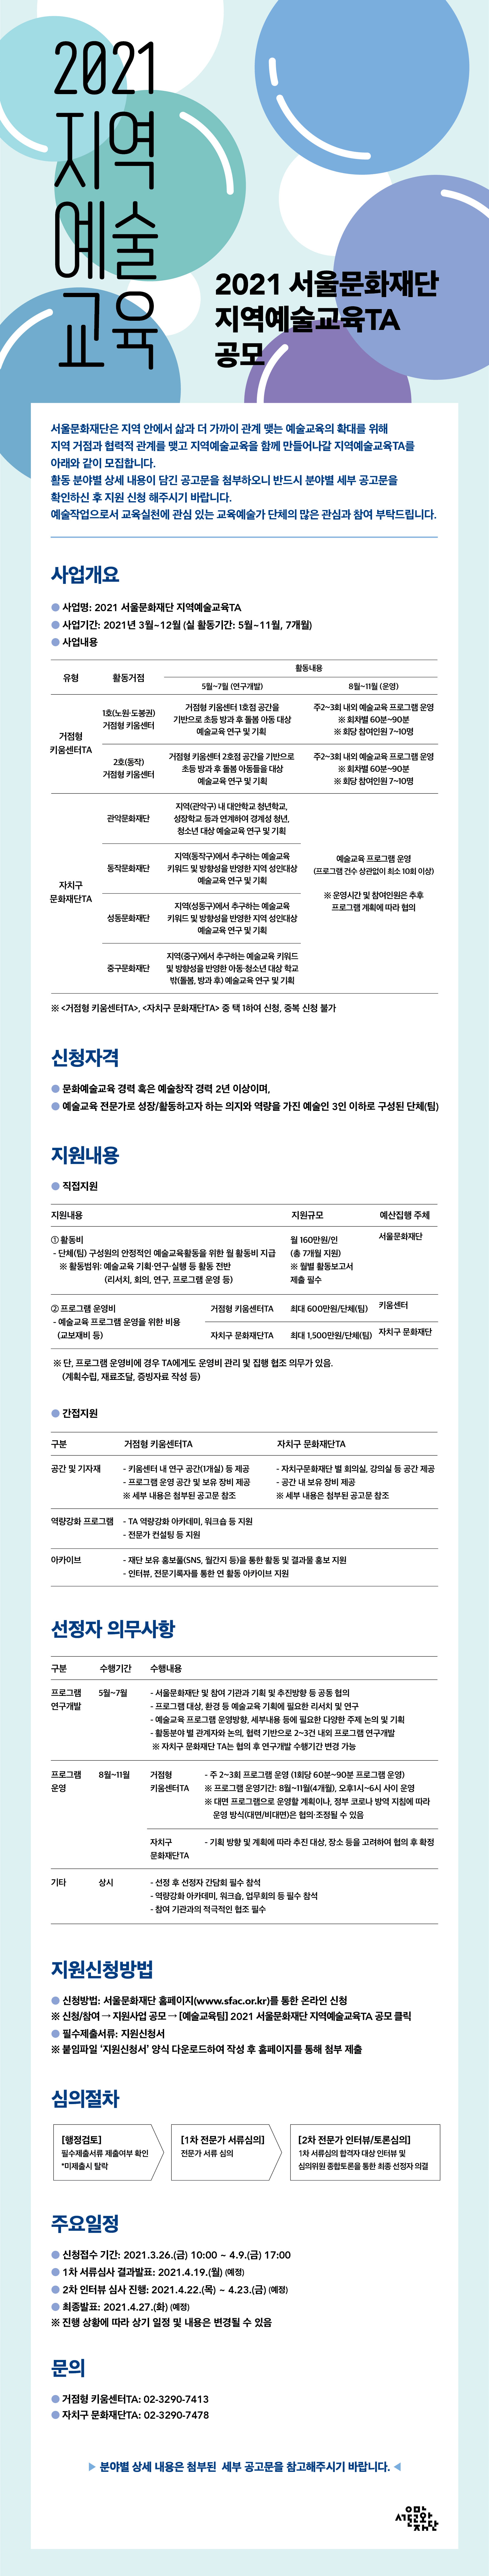 2021지역예술교육 2021 서울문화재단 지역예술교육TA 공모